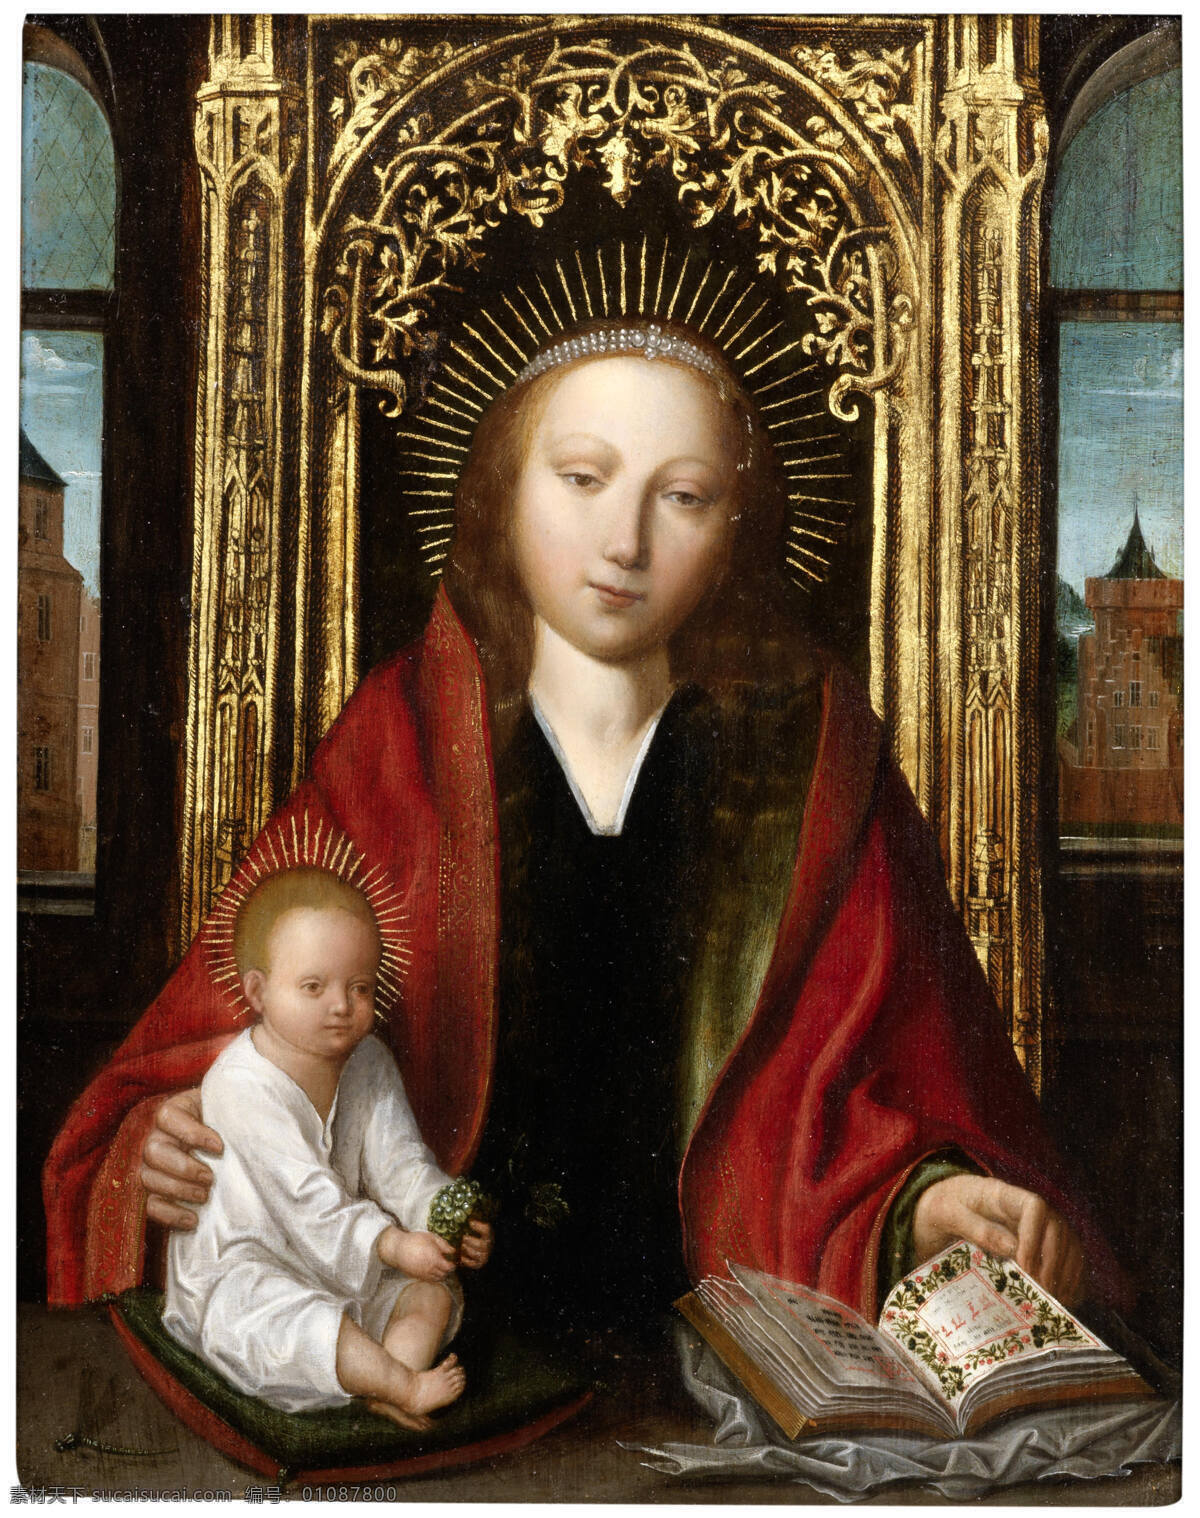 圣母玛丽娅 圣经故事 圣婴耶稣 基督教 宗教油画 古典油画 油画 文化艺术 绘画书法